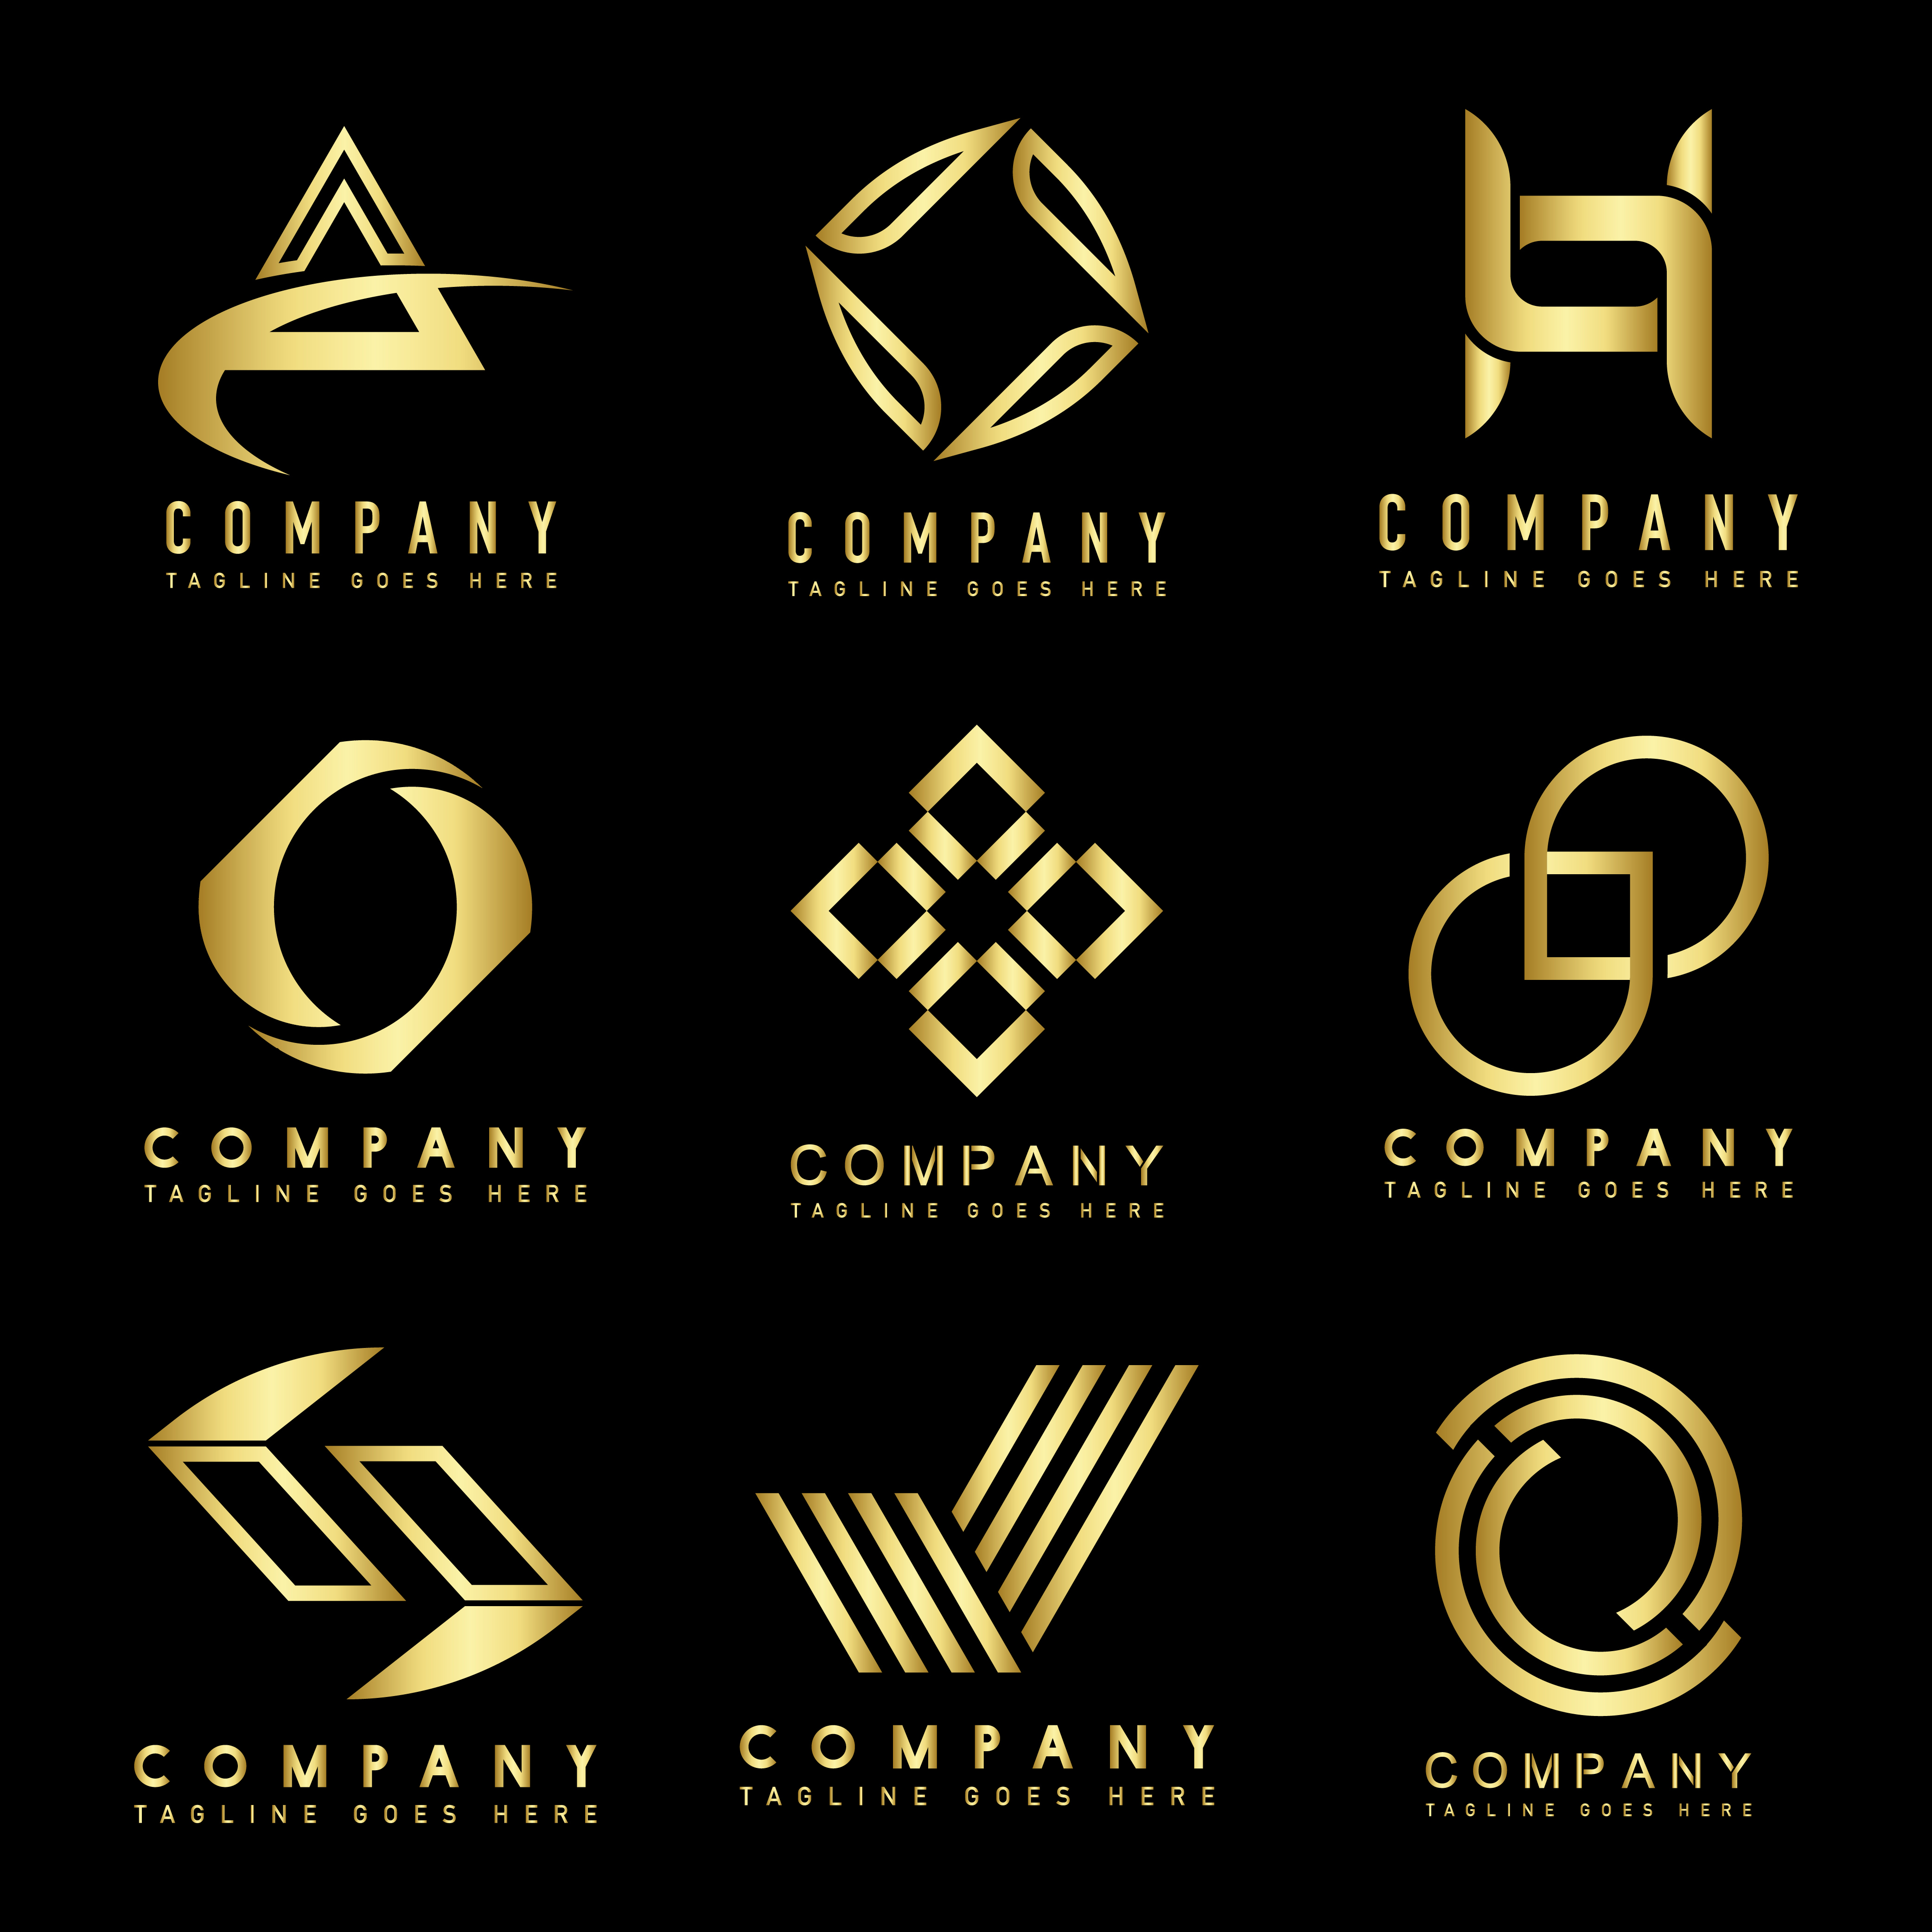 Business Logo Design Ideas Free